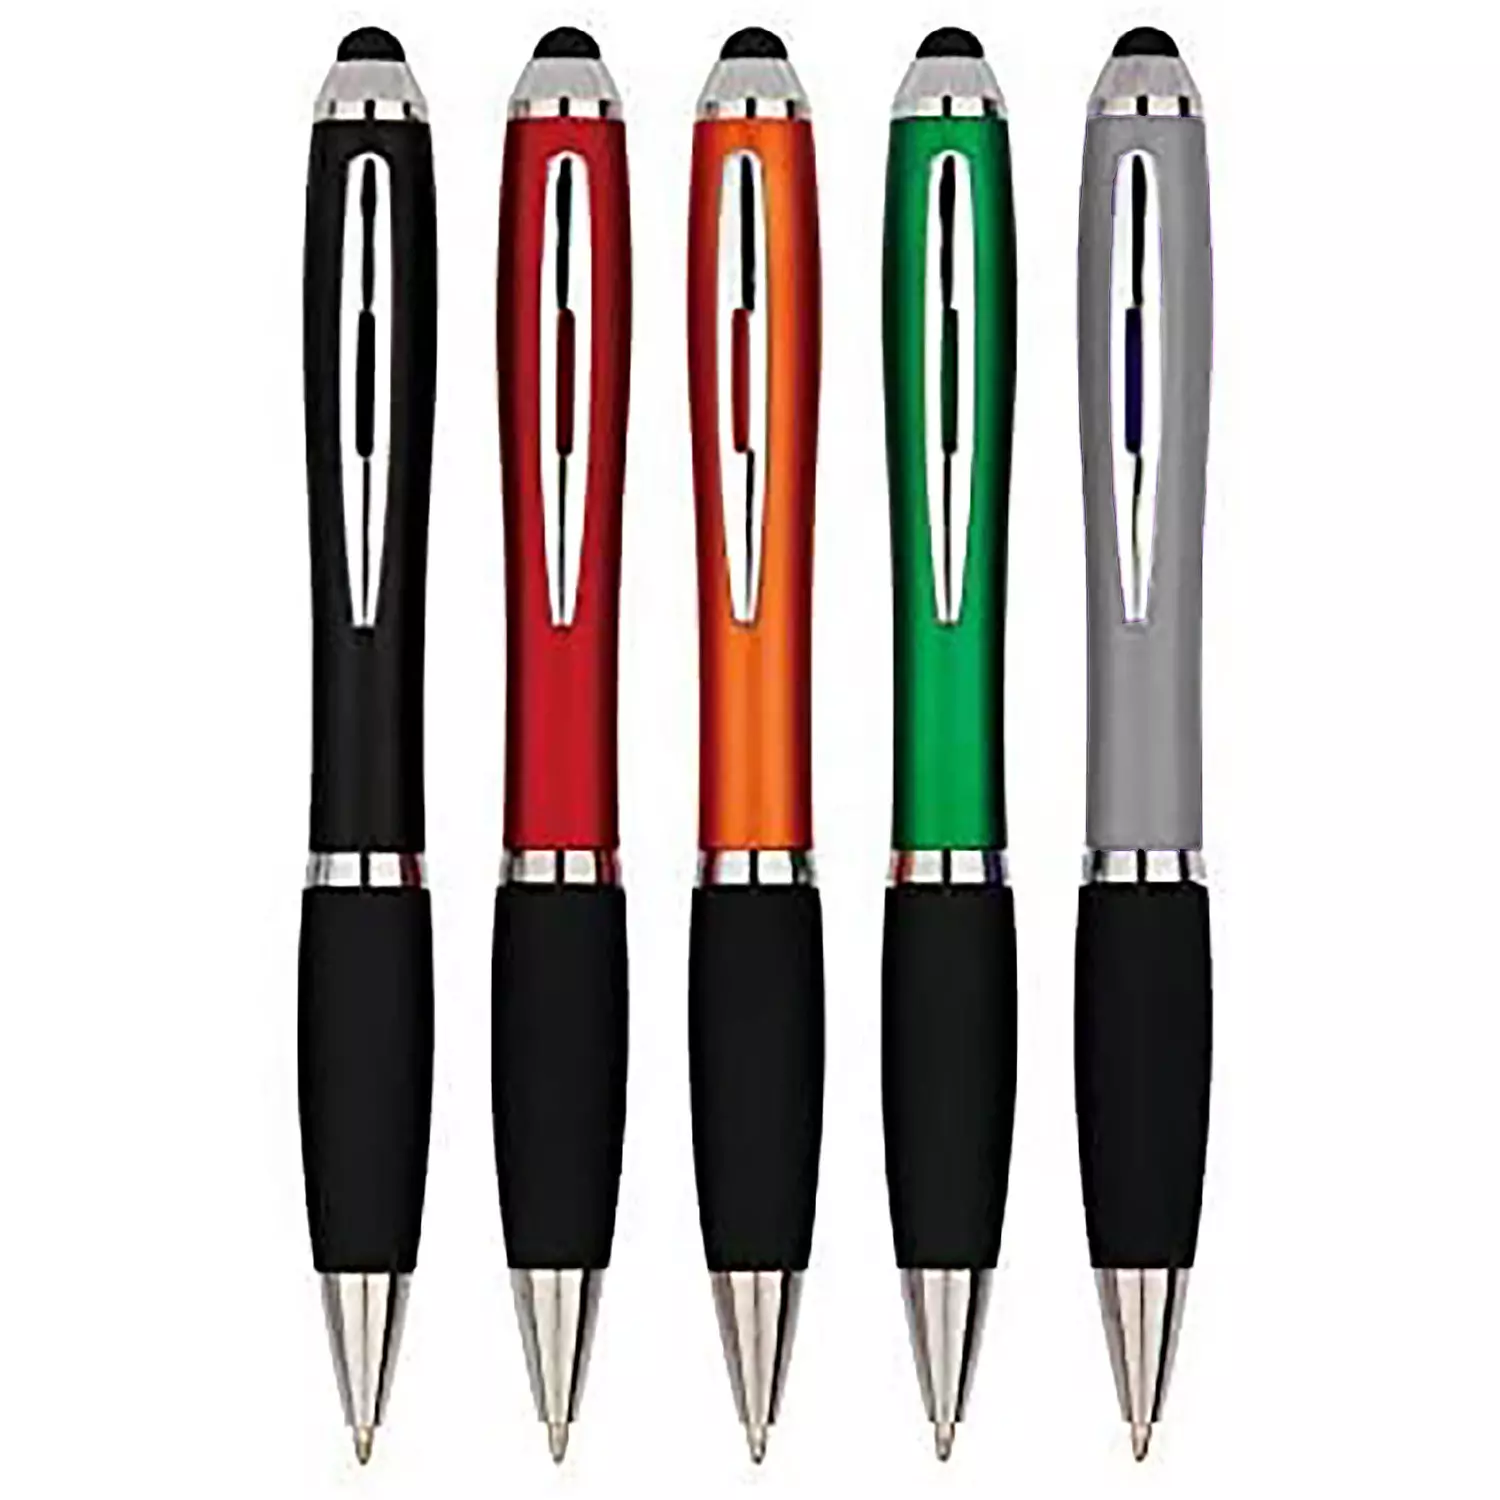 https://www.rossy.ca/media/A2W/products/stylets-et-stylos-a-bille-pour-ecran-tactile-2en1-paq-de-5-62696-1.webp